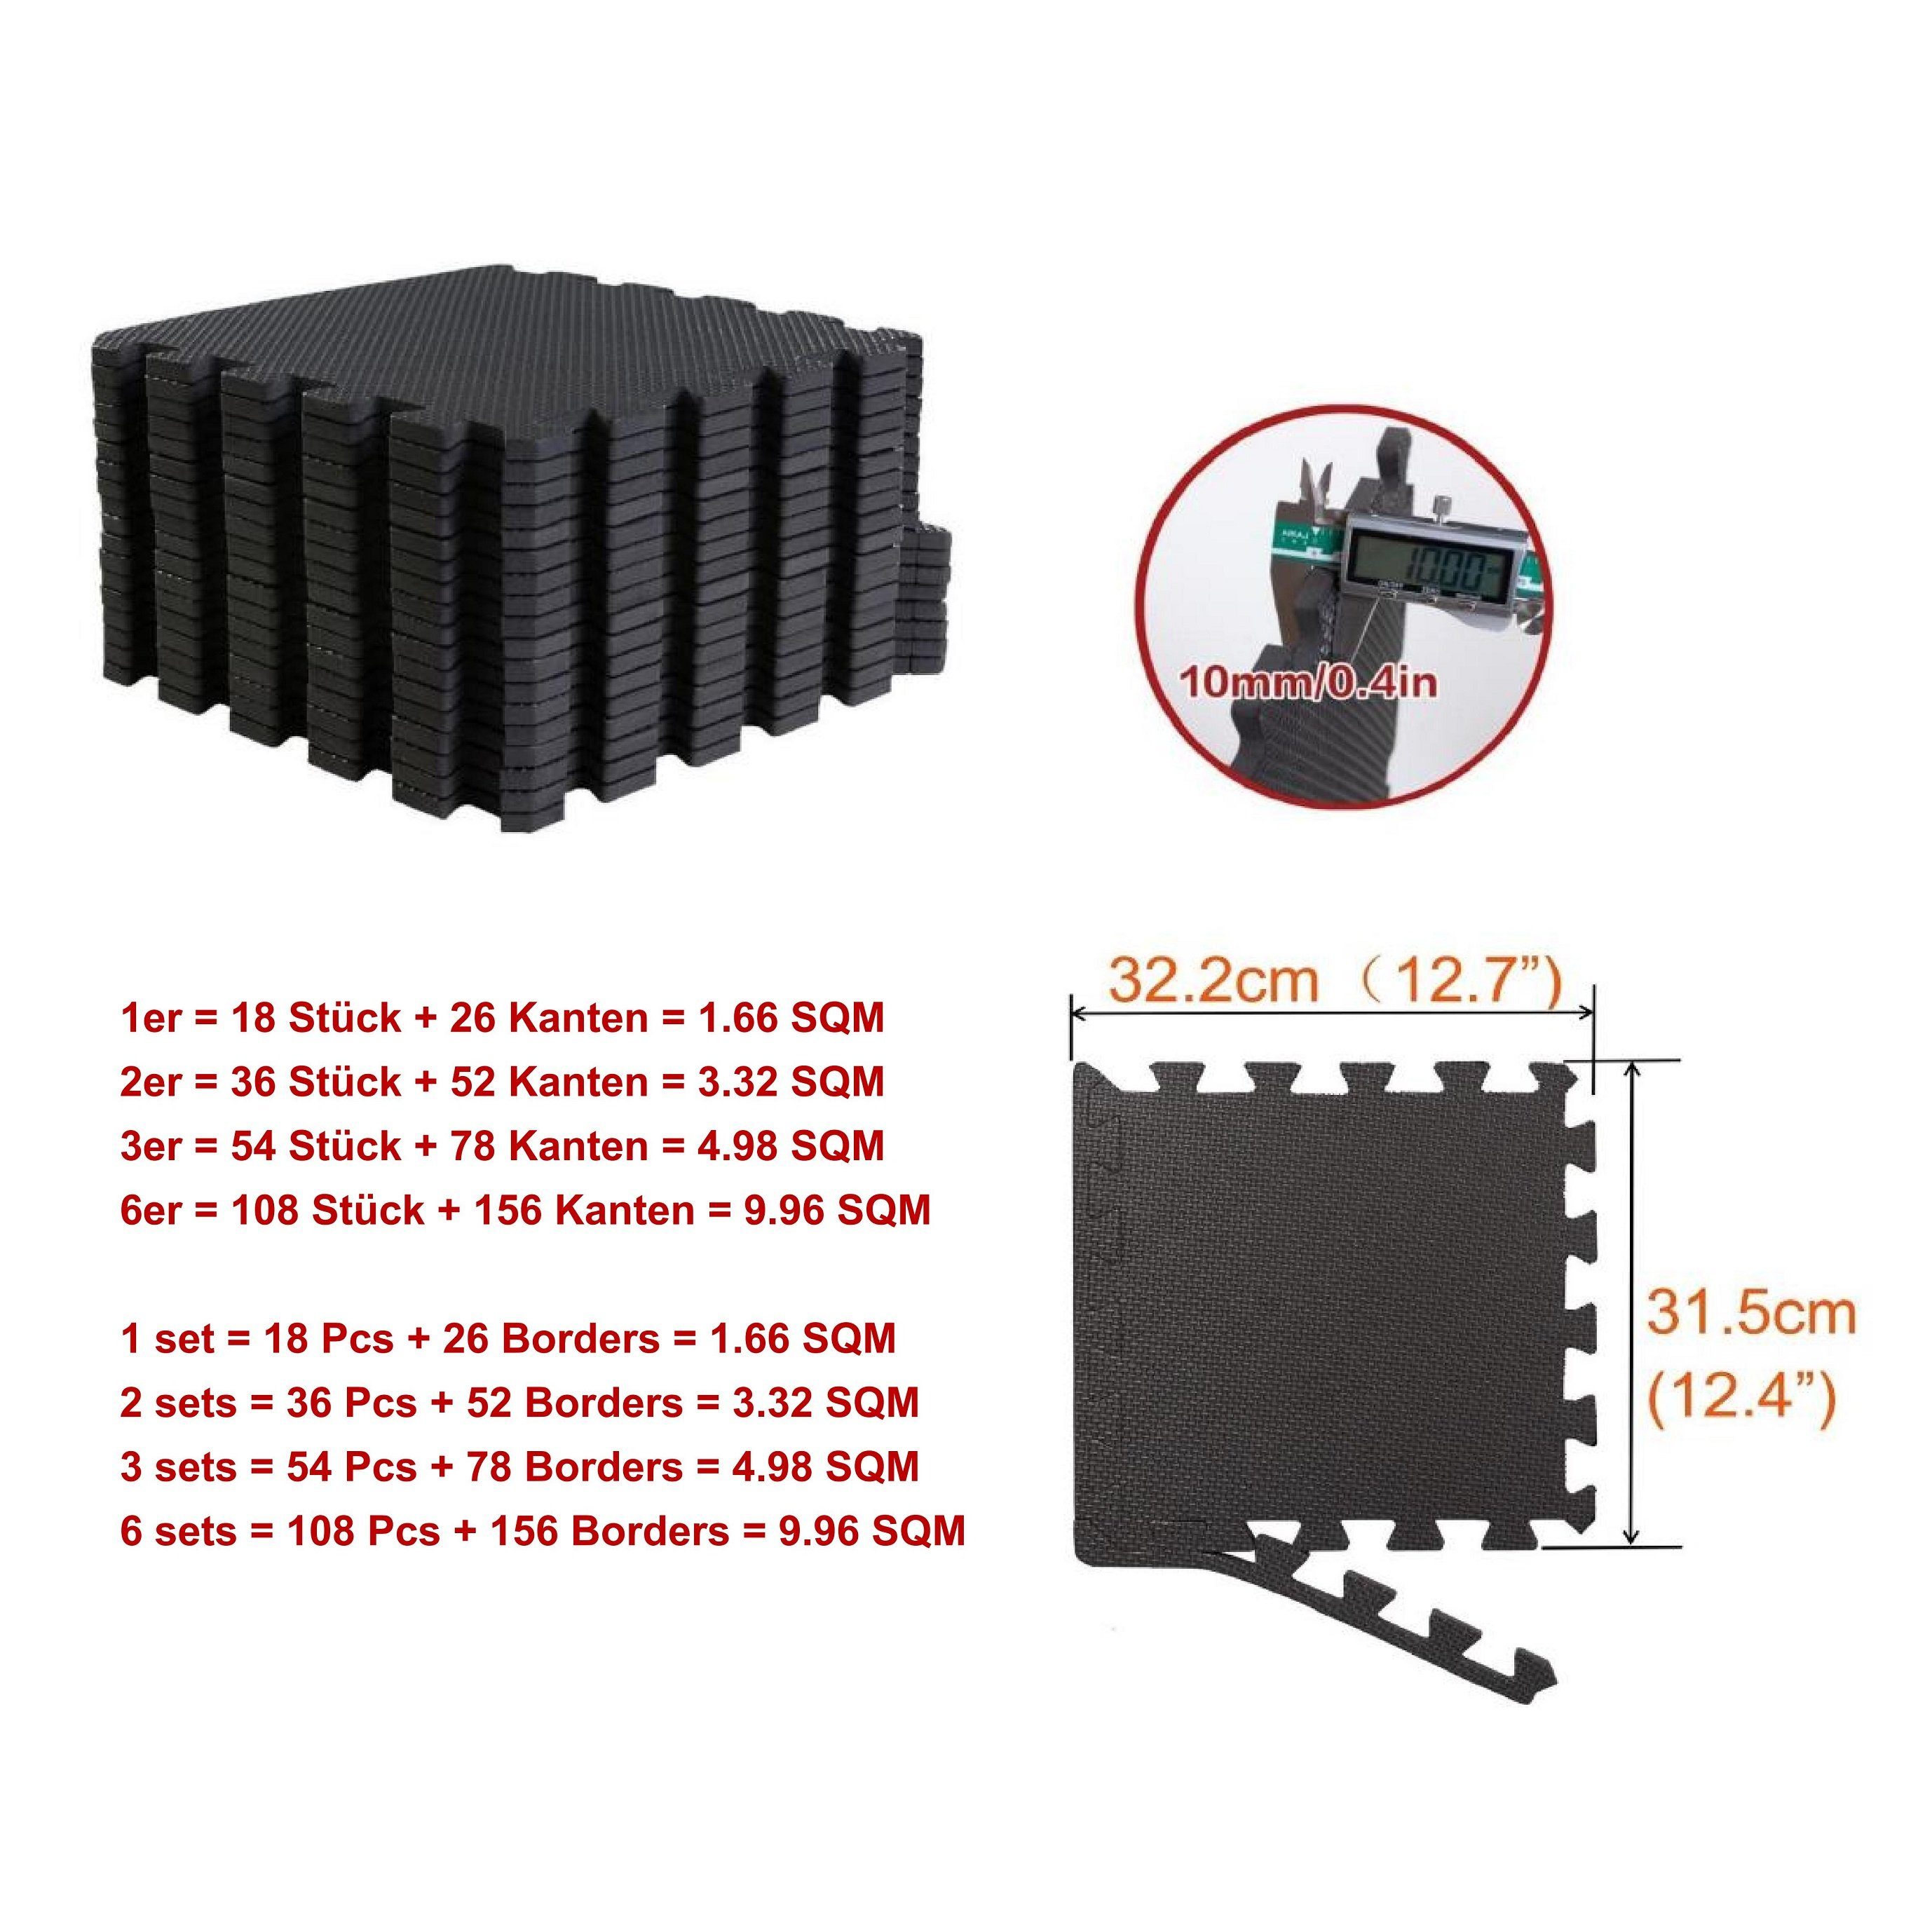 BodenMax Bodenturnmatte BodenMax® bodenschutzmatte sportmatte 30x30x1cm 36stück=3.32m²(11.44€/m²)schwarz puzzle